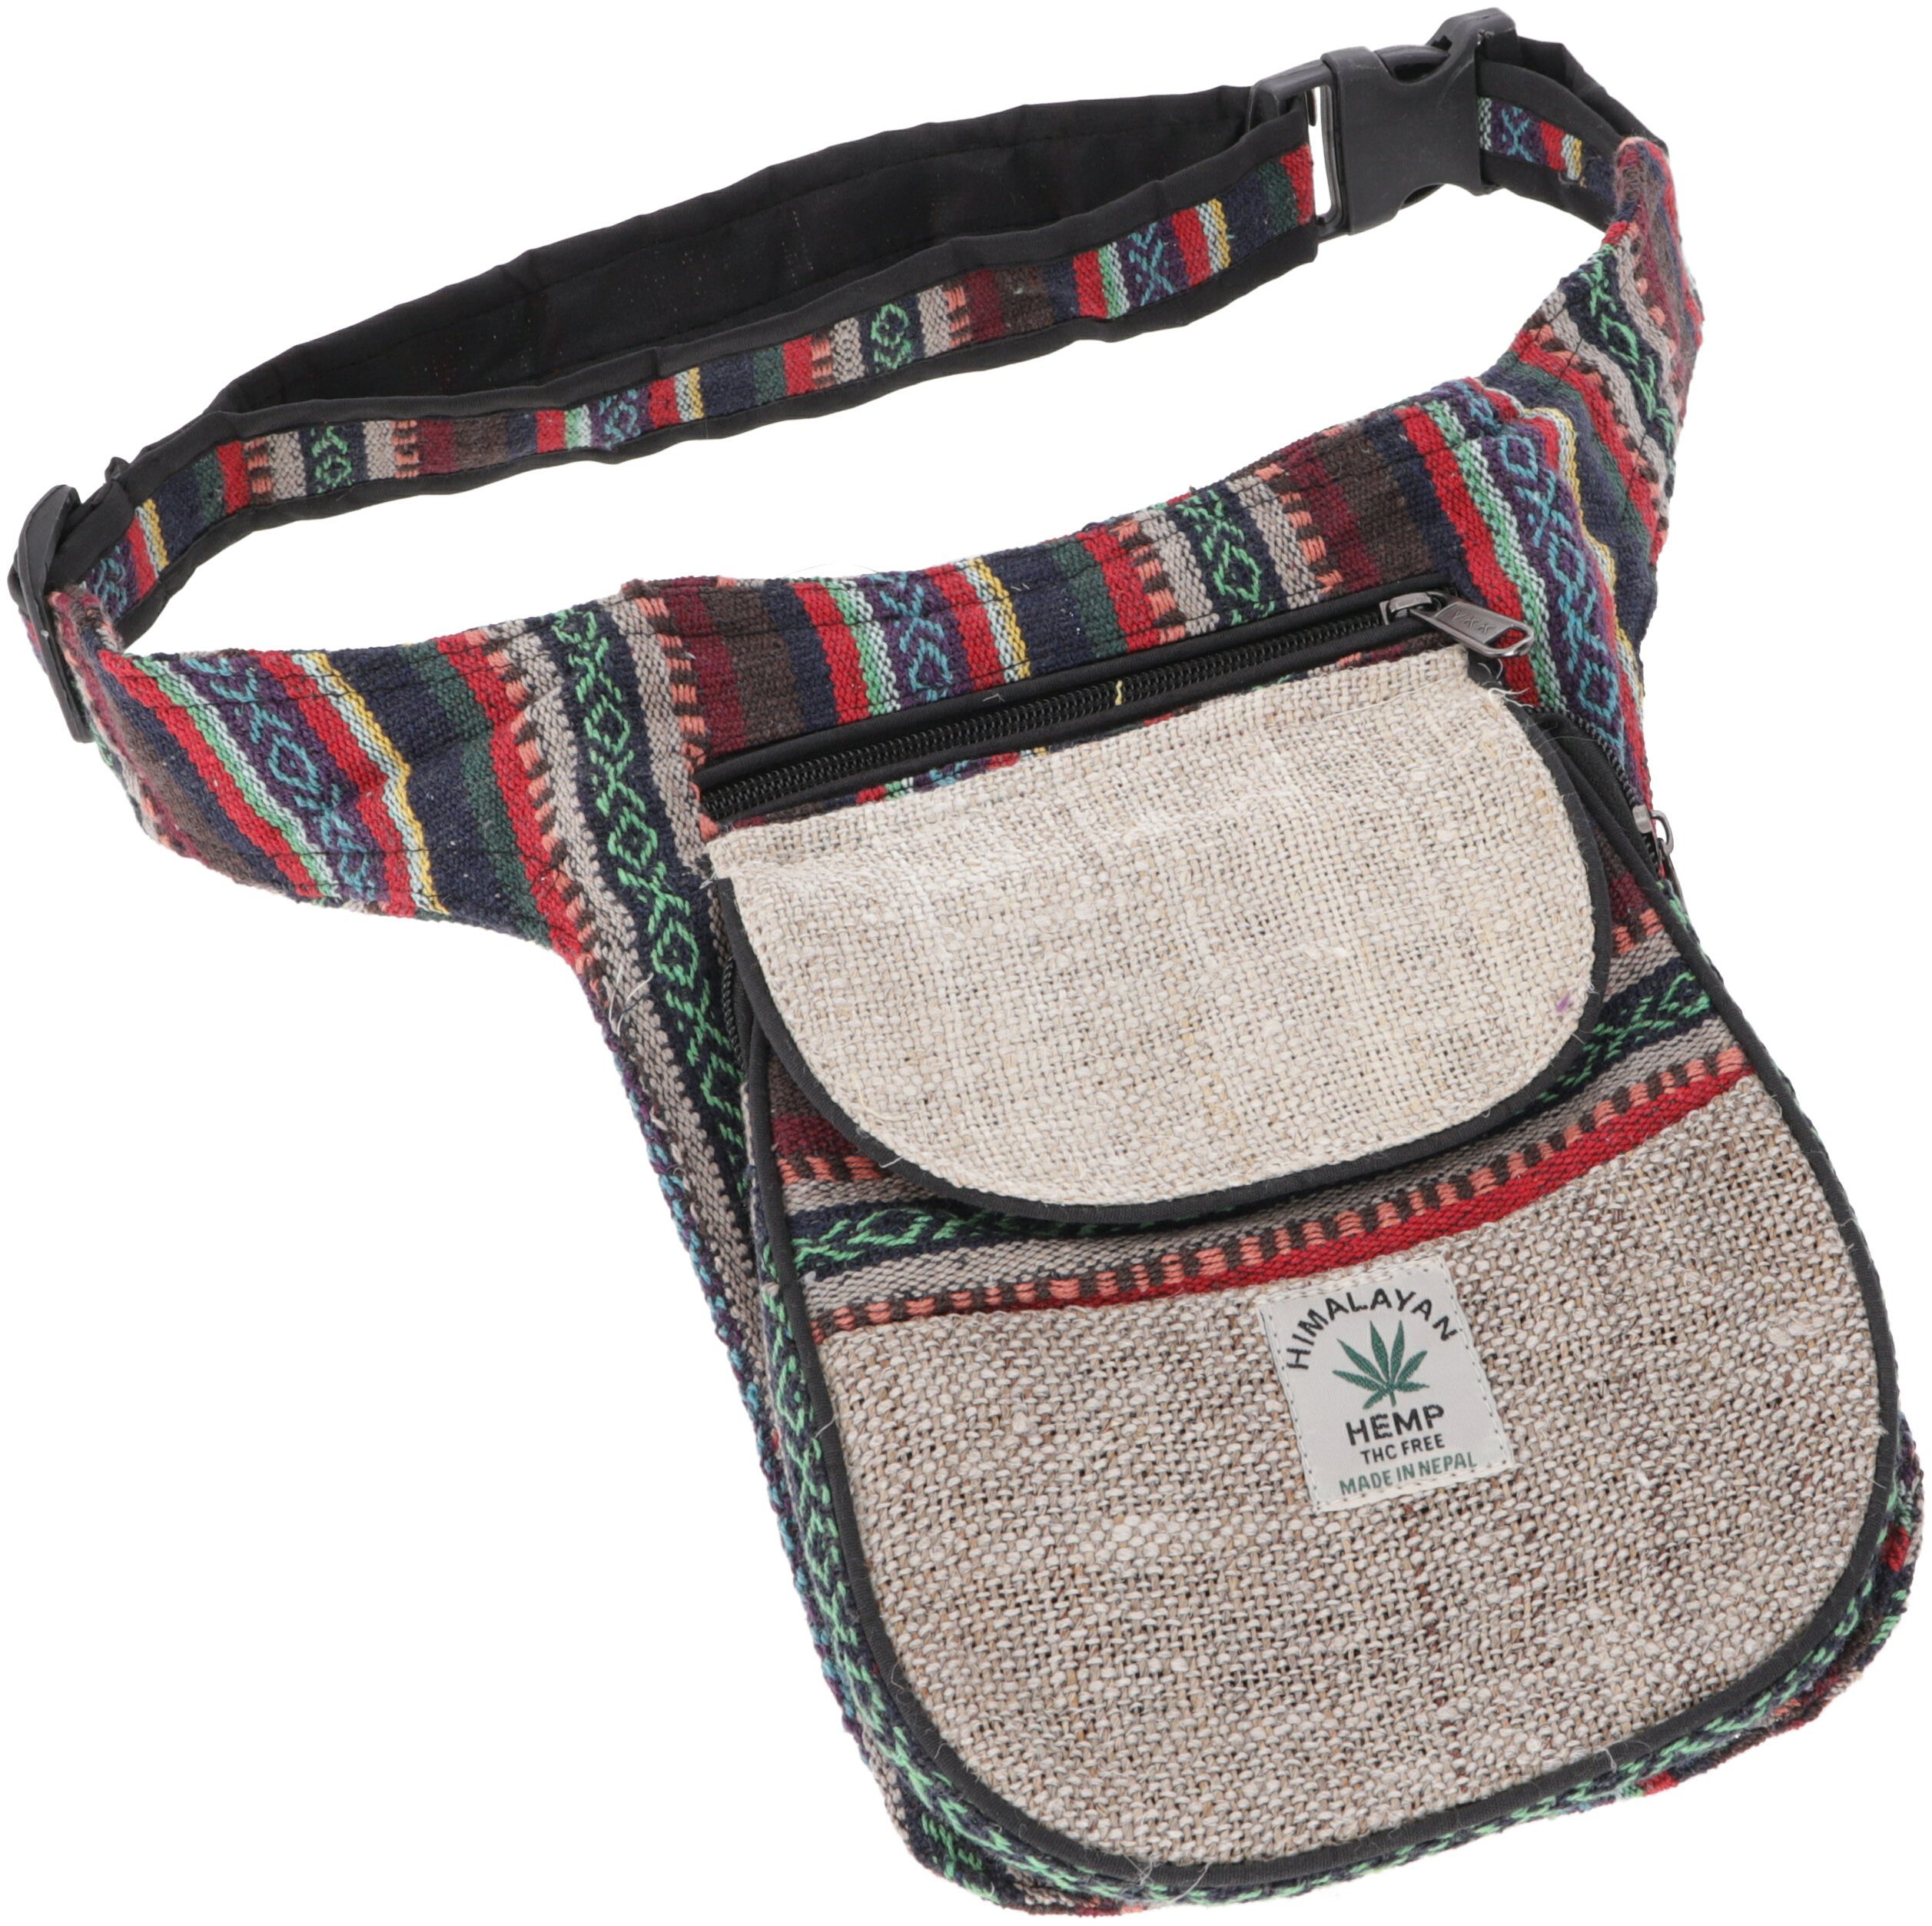 Gürteltasche 8 Nepal Guru-Shop Hanf - Ethno Modell Gürteltasche Sidebag,